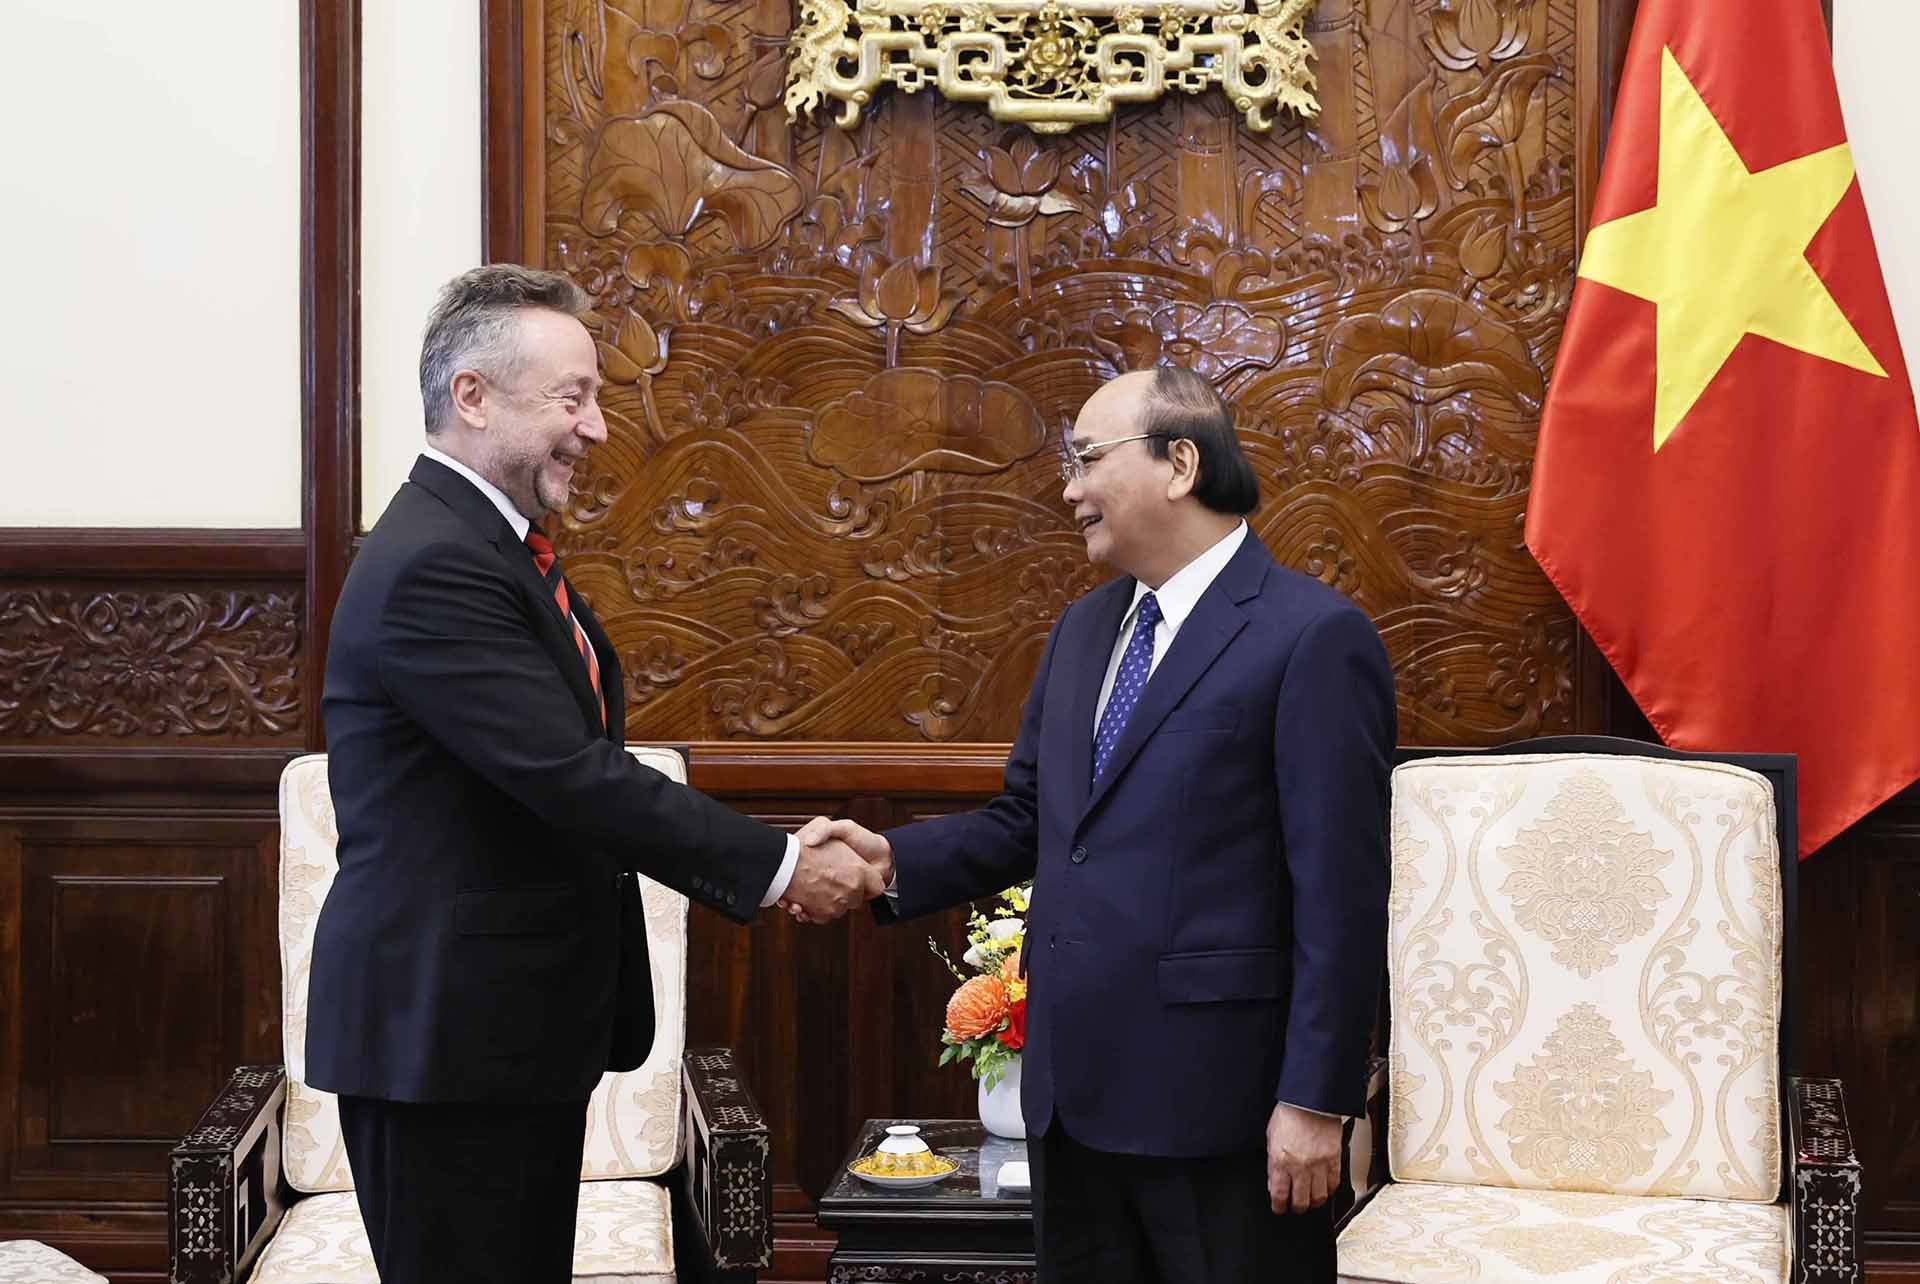 Chủ tịch nước Nguyễn Xuân Phúc tiếp các Đại sứ Czech và Oman đến chào từ biệt kết thúc nhiệm kỳ